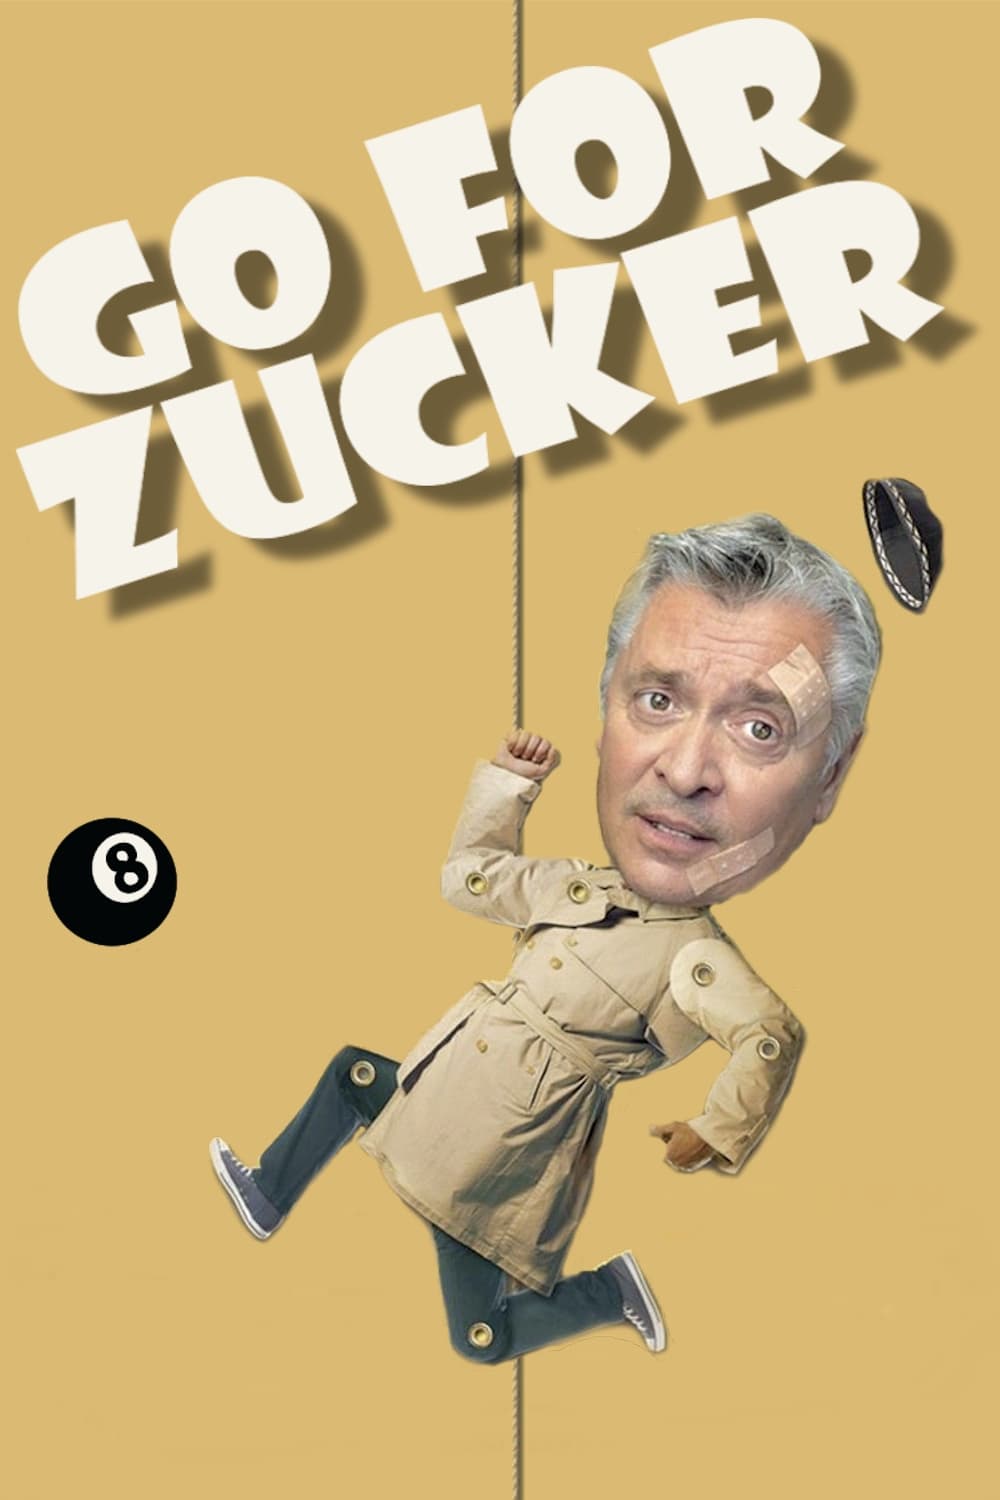 Go for Zucker (2004)